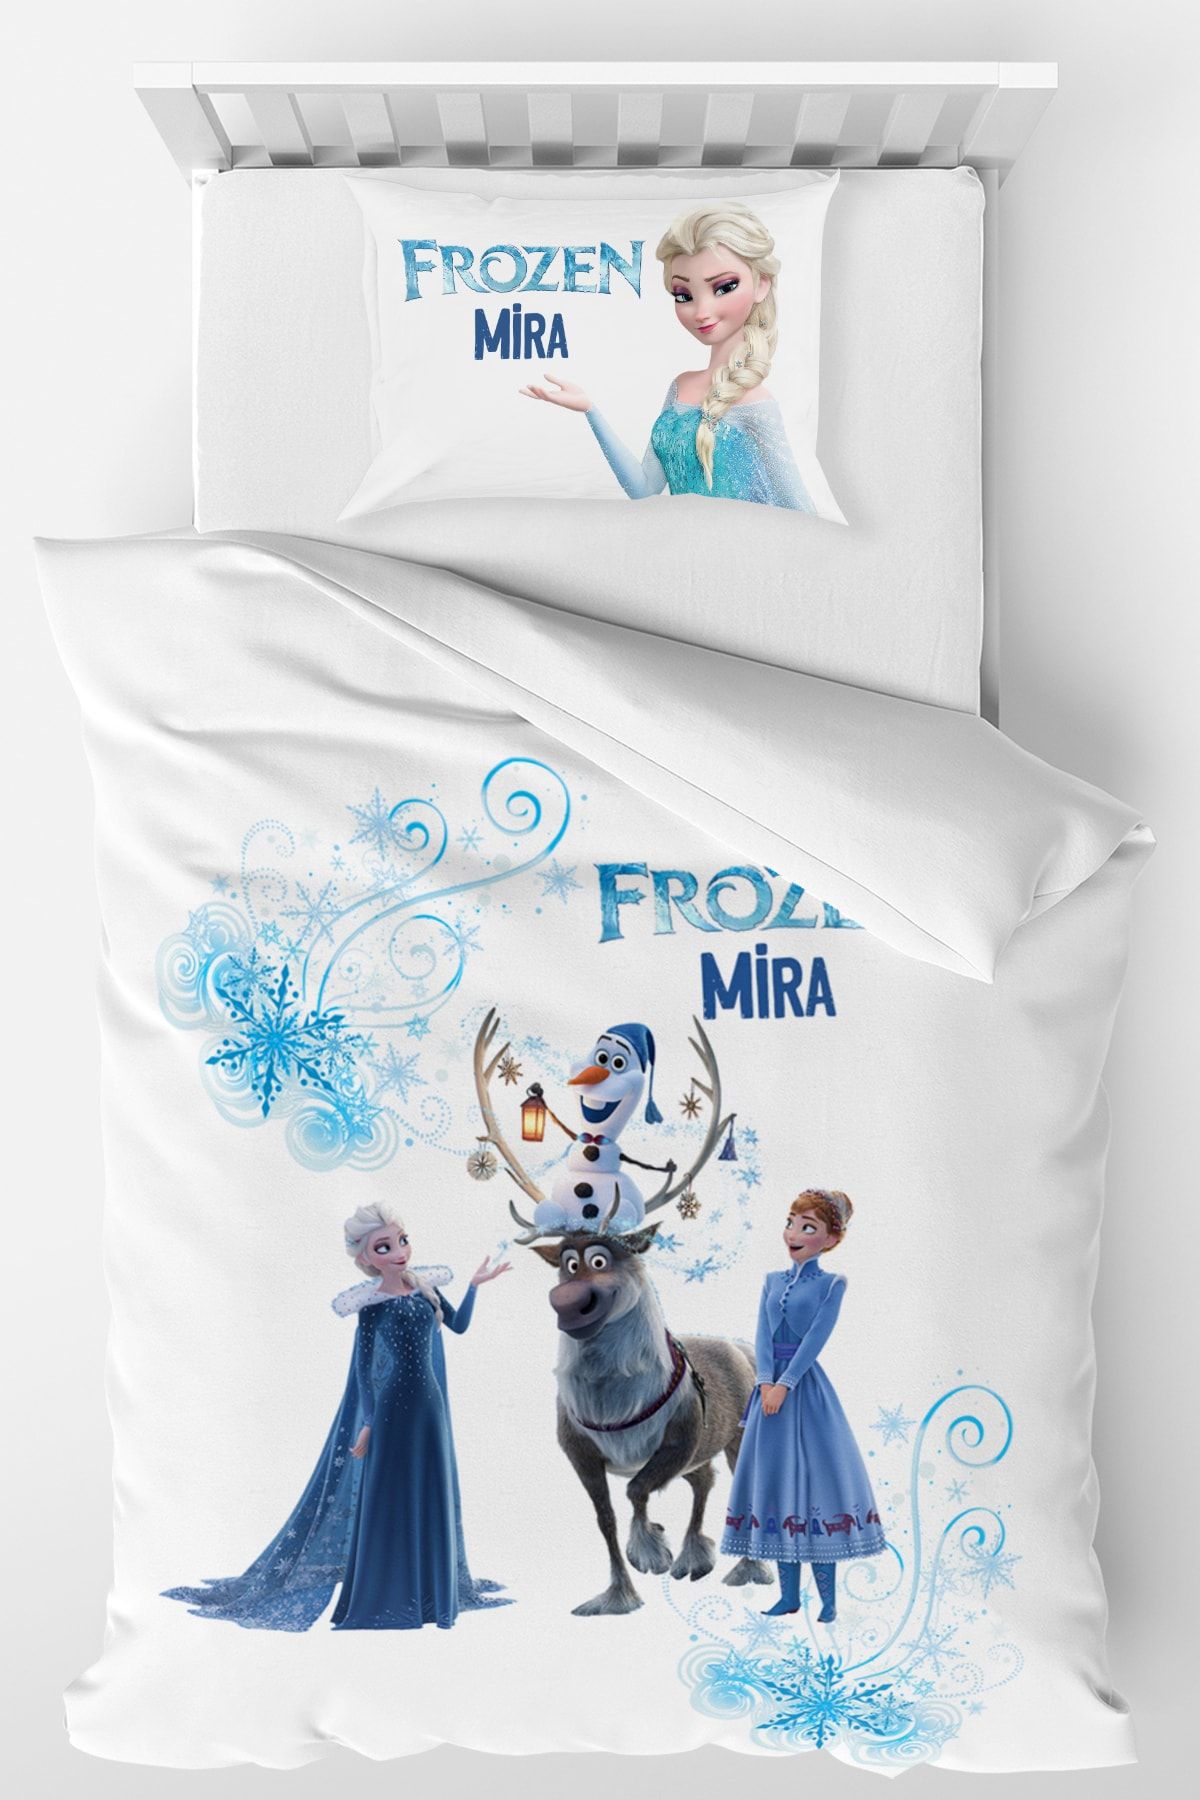 Homamia Isme Özel Tek Kişilik Mikro Saten Nevresim Takımı Frozen Elsa